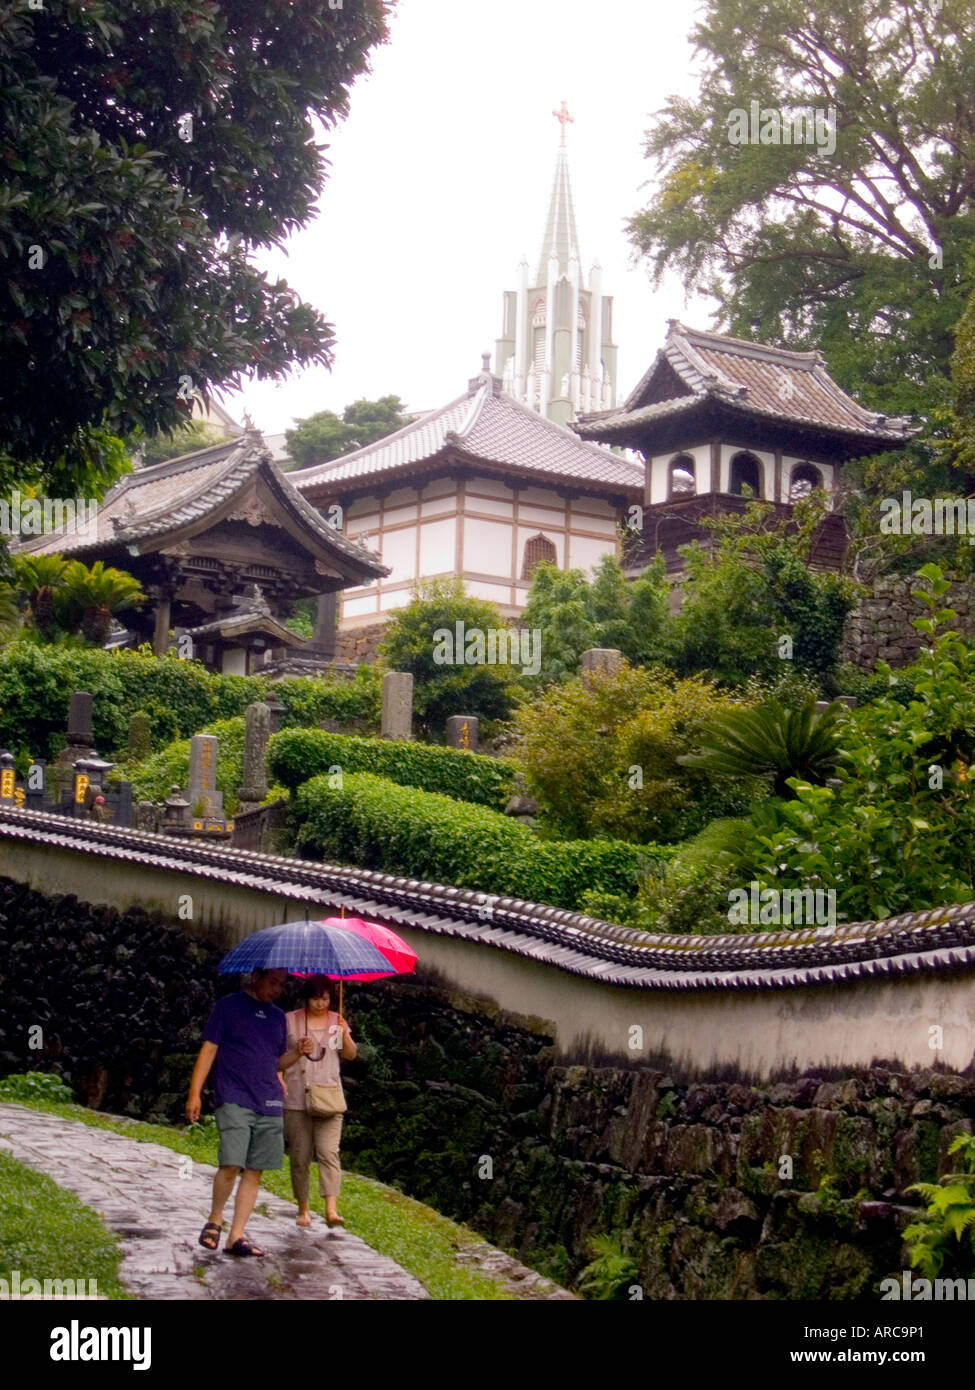 Giappone isola hirado giovane passeggiando per le lane a pioggia con san Francesco Saverio la Chiesa commemorativa in background Foto Stock